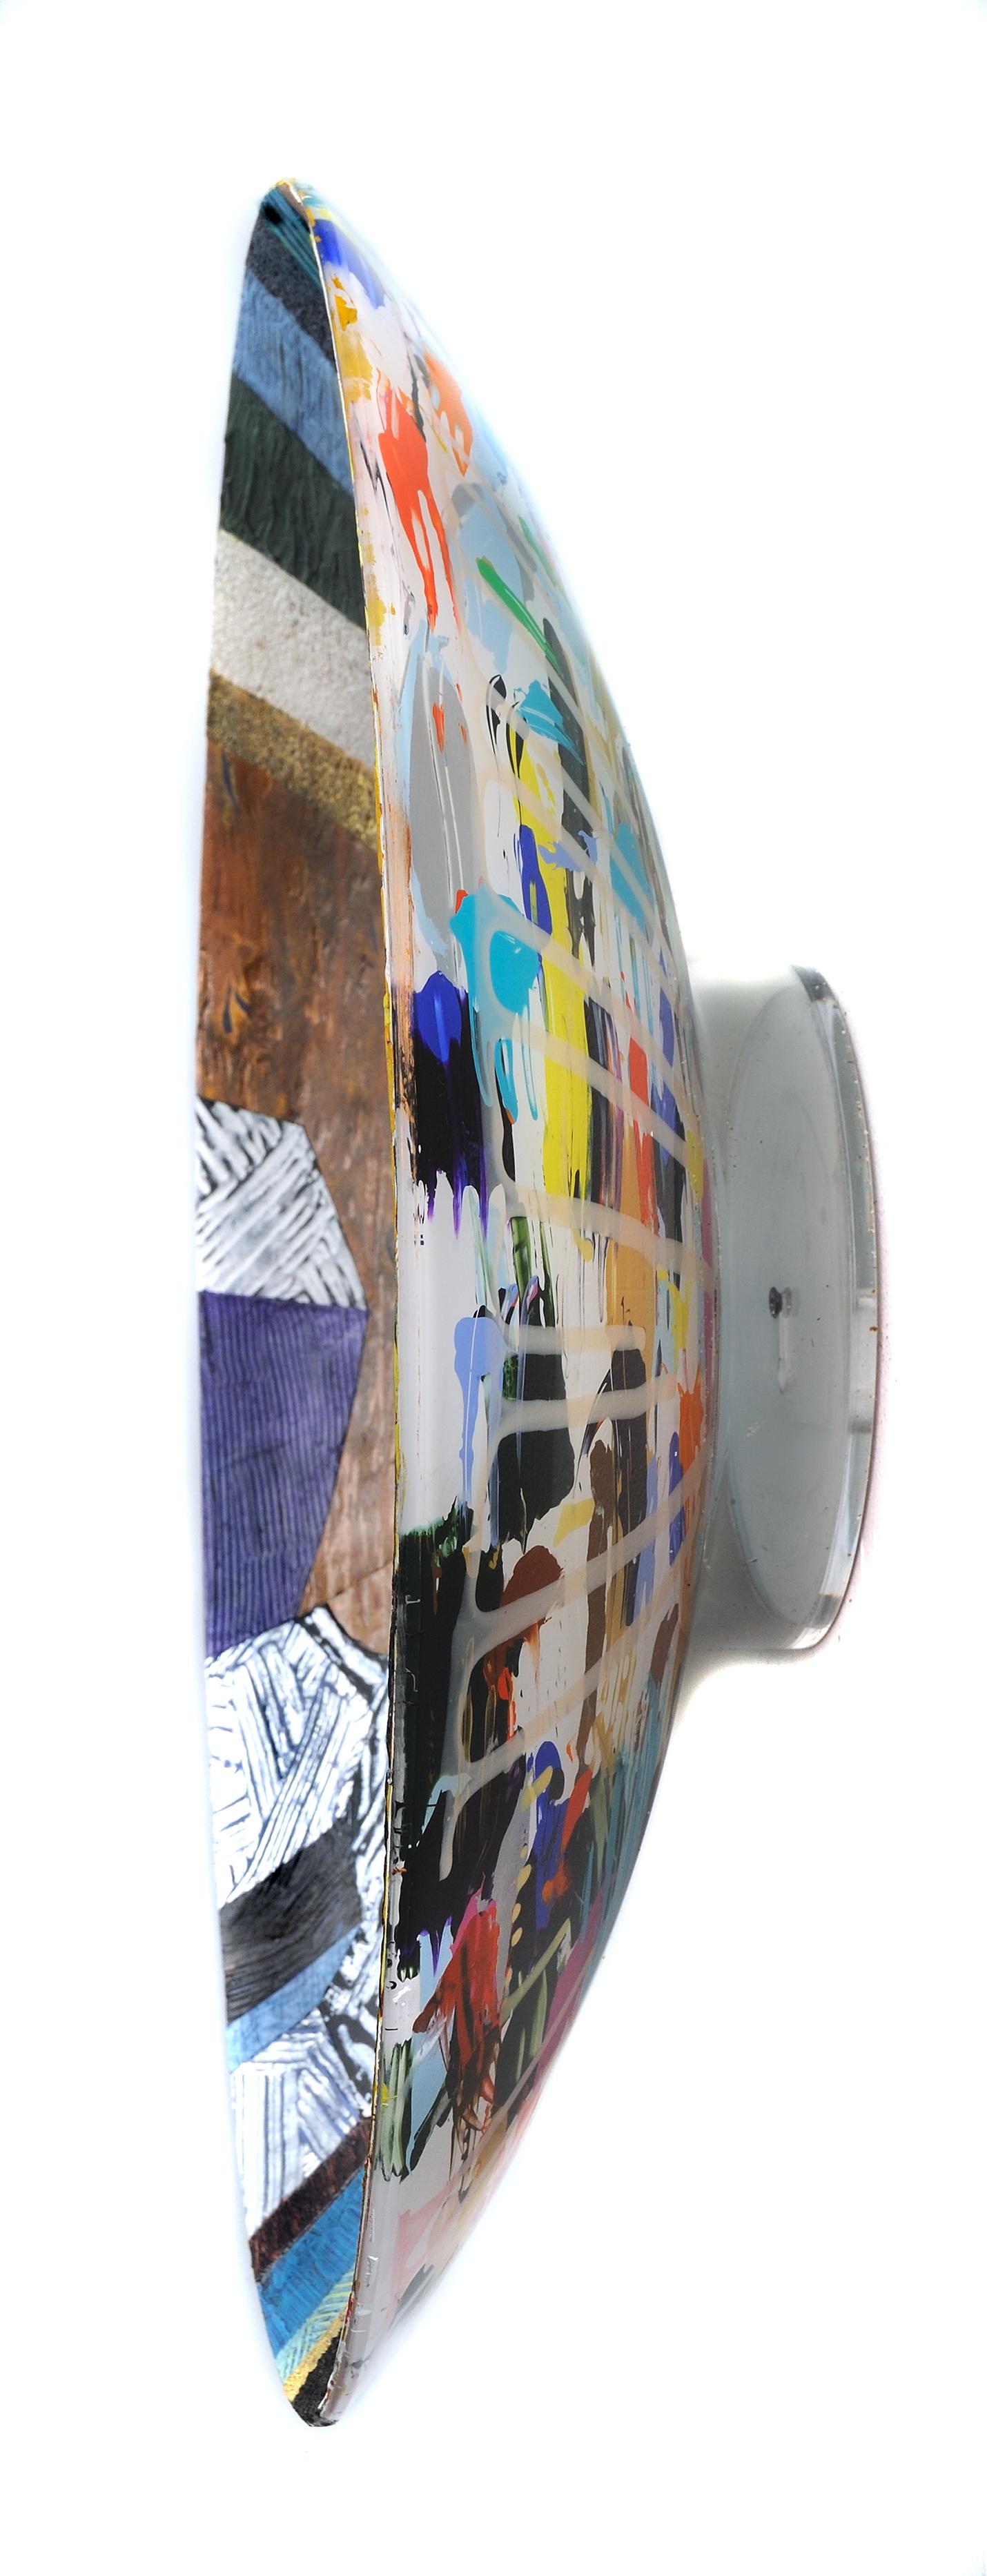 Vase n°4, pièce sculpturale multicolore en techniques mixtes, texturée, 55,9 cm de diamètre - Sculpture de Francie Hester